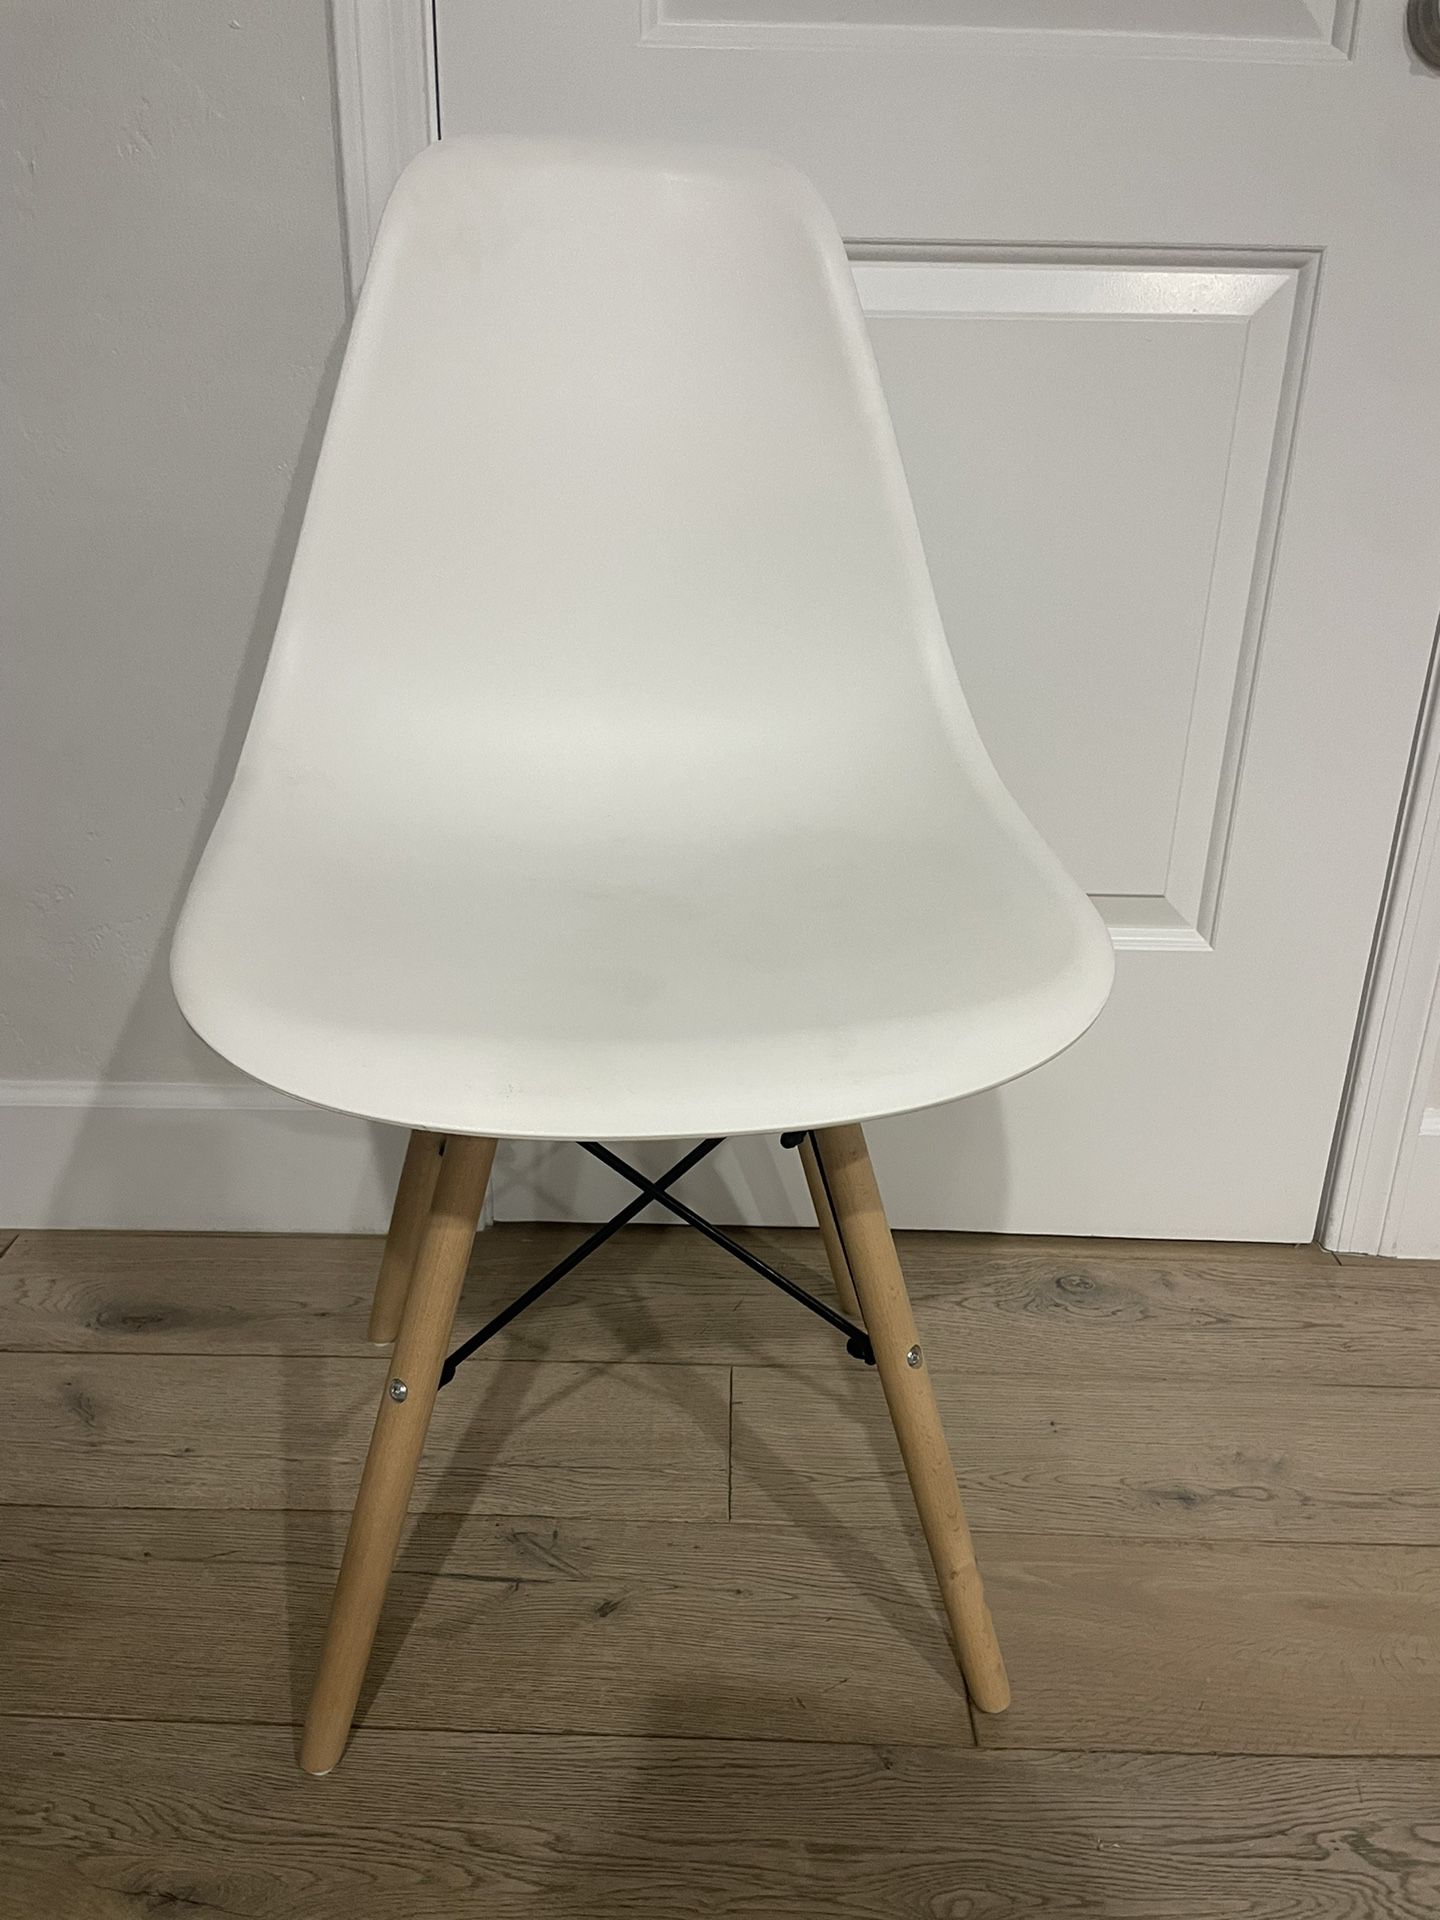 Cute White Chair w/ Wooden Legs